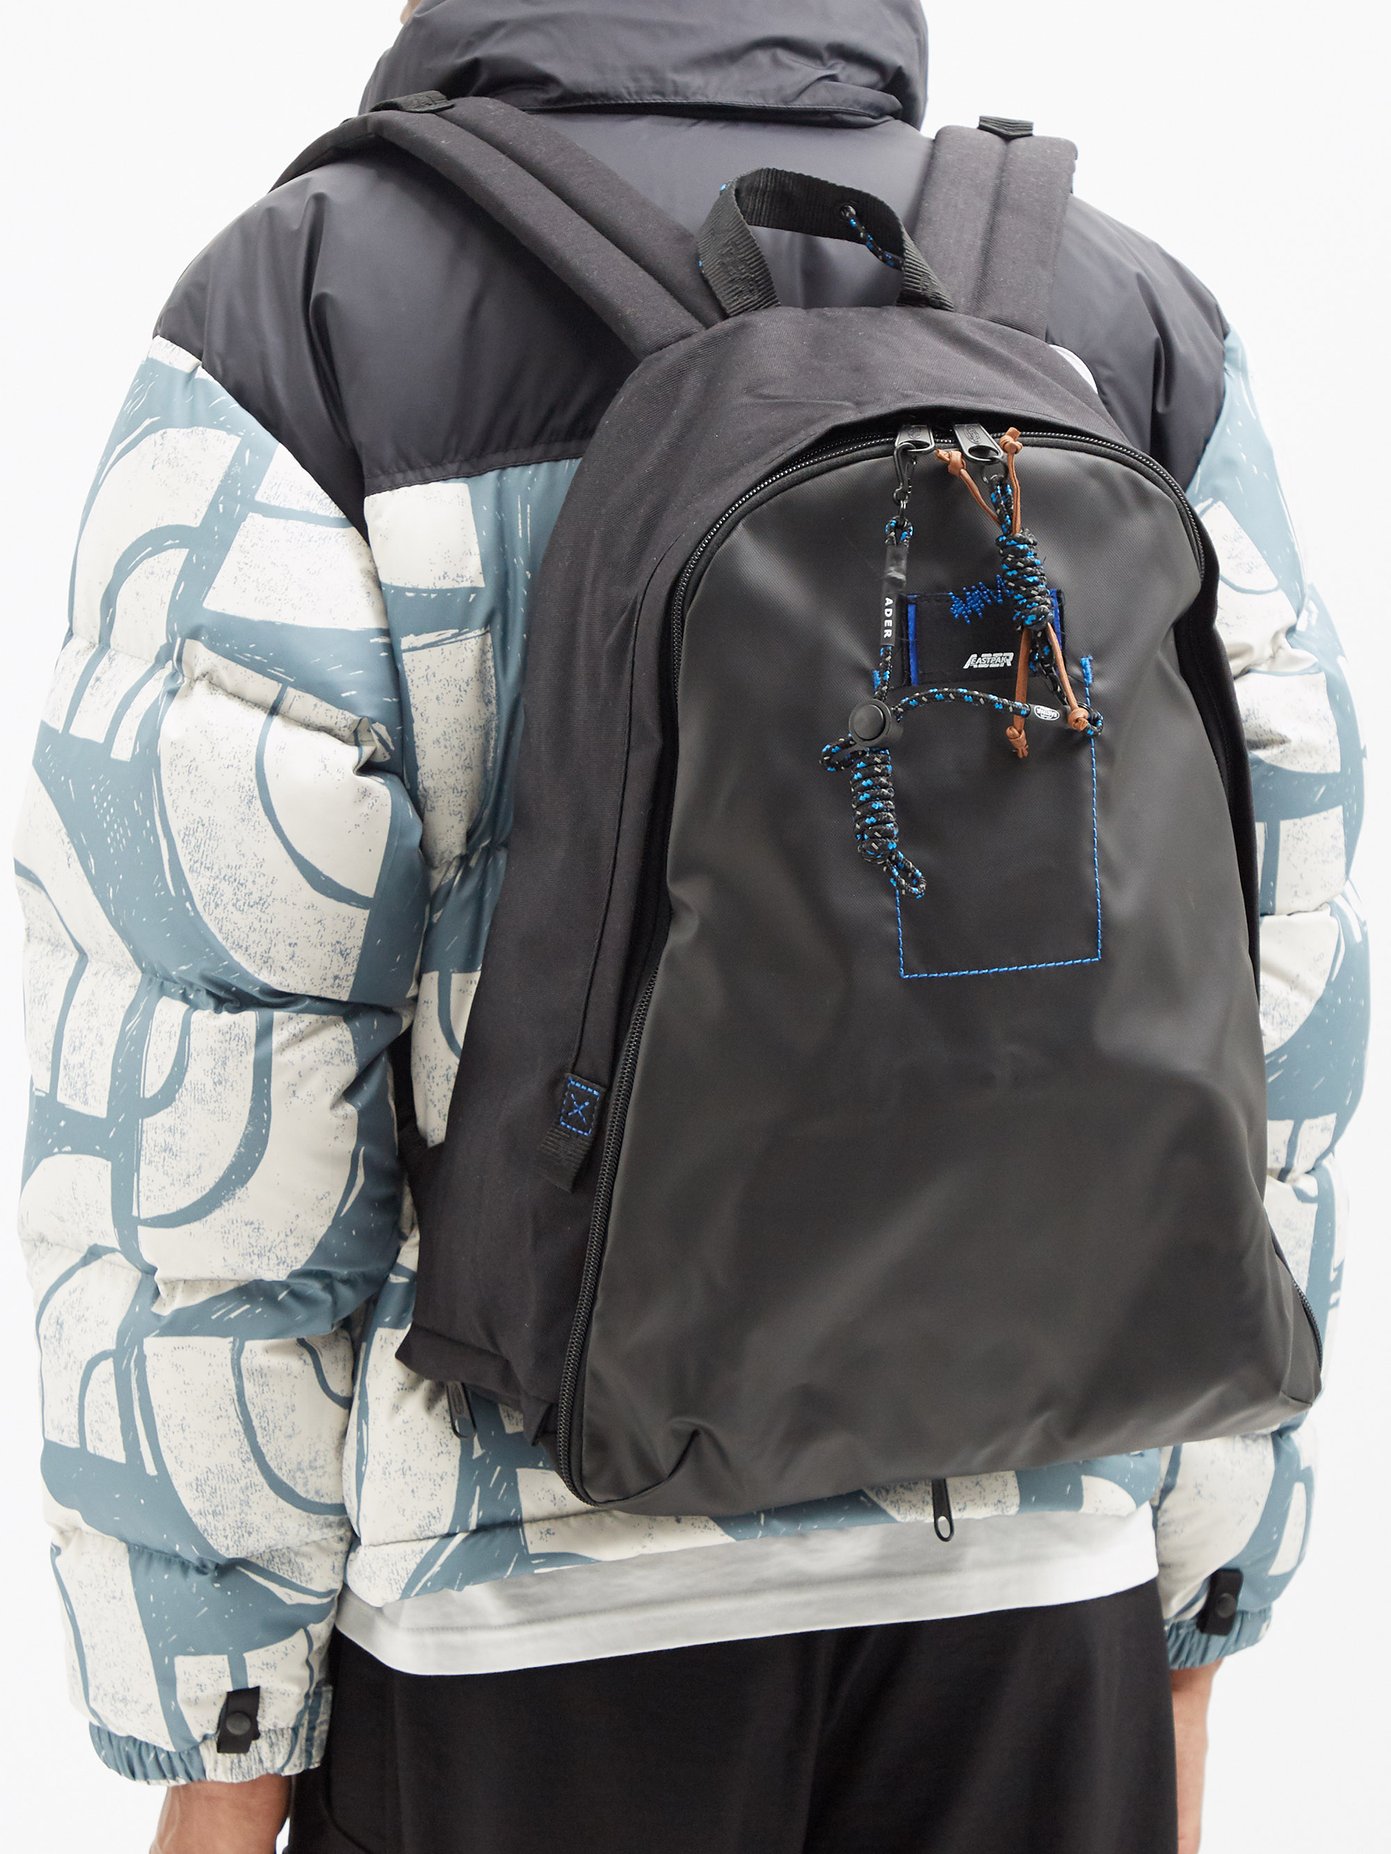 이스트팩 X 아더 에러 백팩 Eastpak X ADERERROR technical-shell backpack,Black